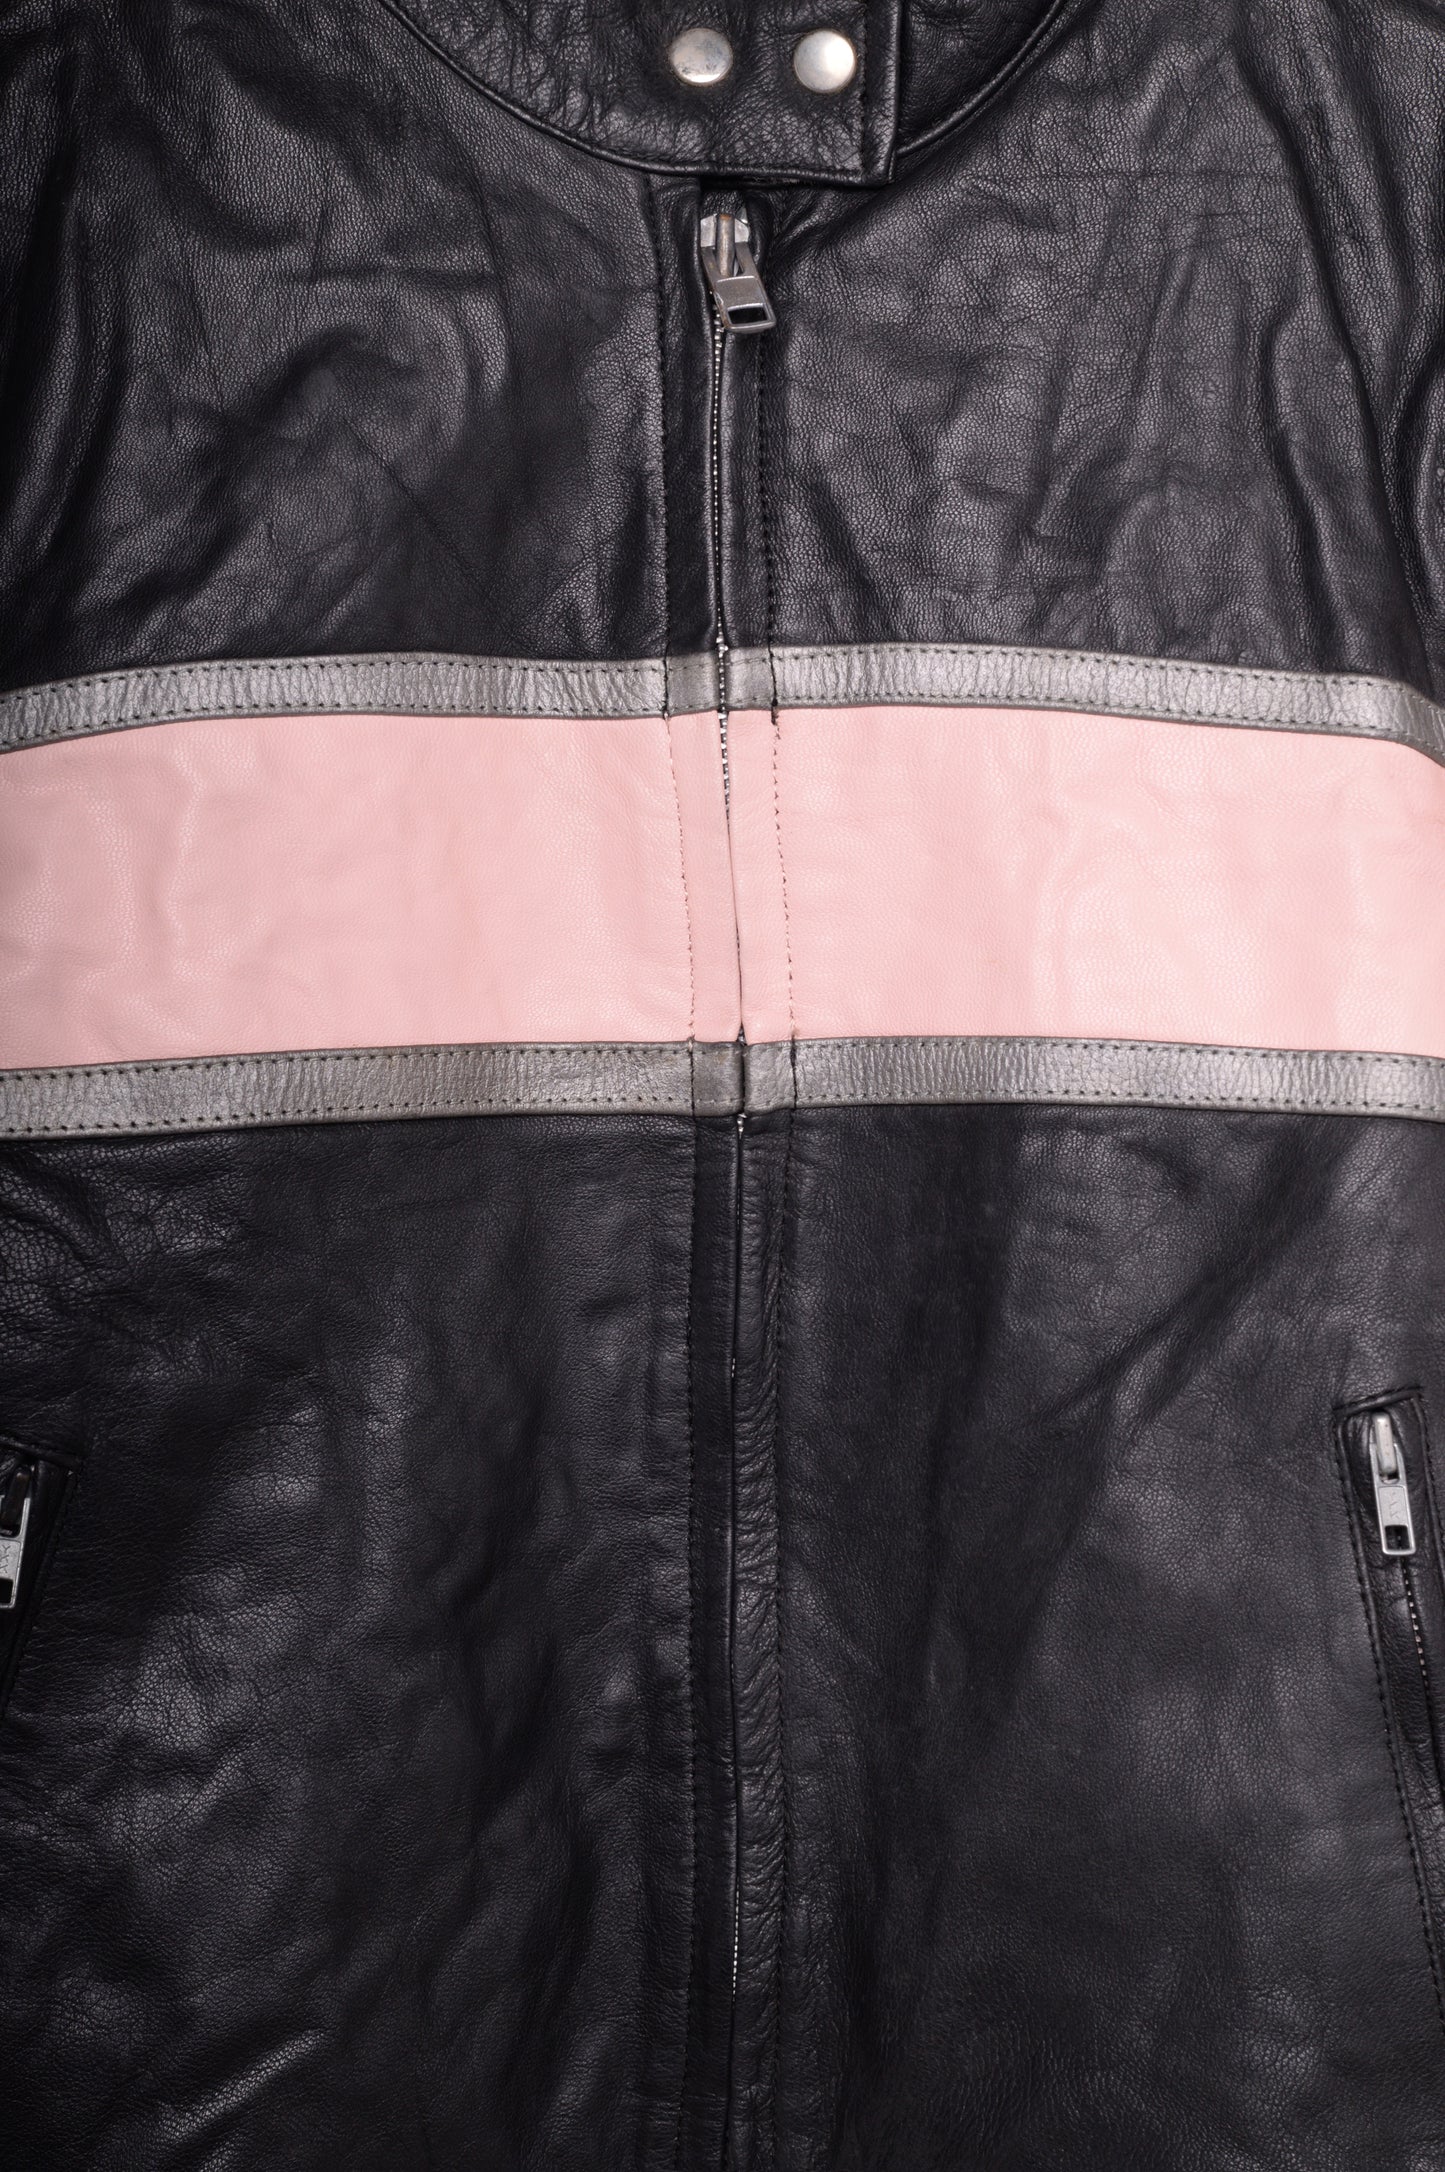 1980s Leather Moto Jacket